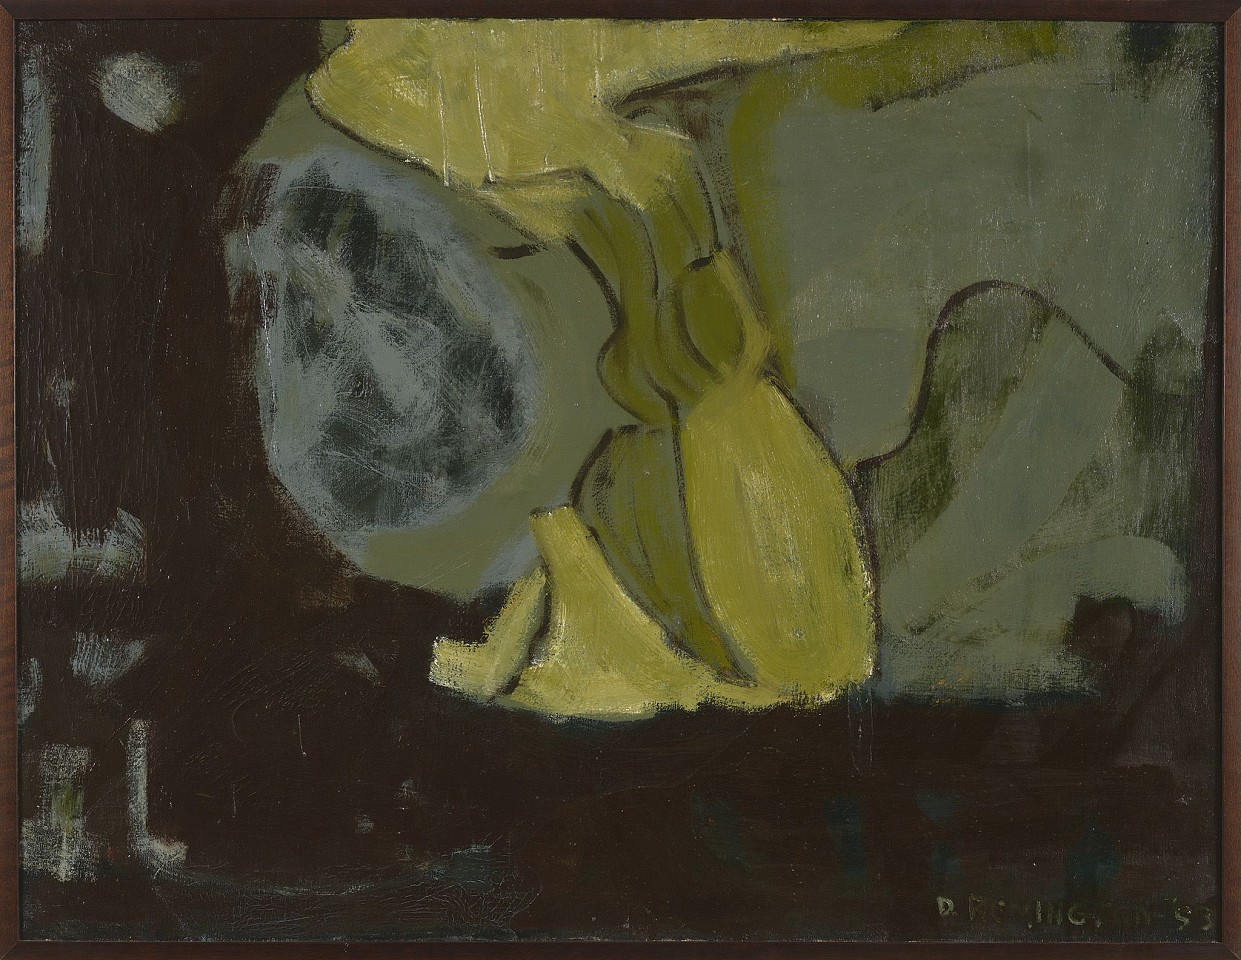 Deborah Remington, Untitled, 1953
Oil on canvas, 32 1/2 x 42 in. (82.5 x 106.7 cm)
REM-00002